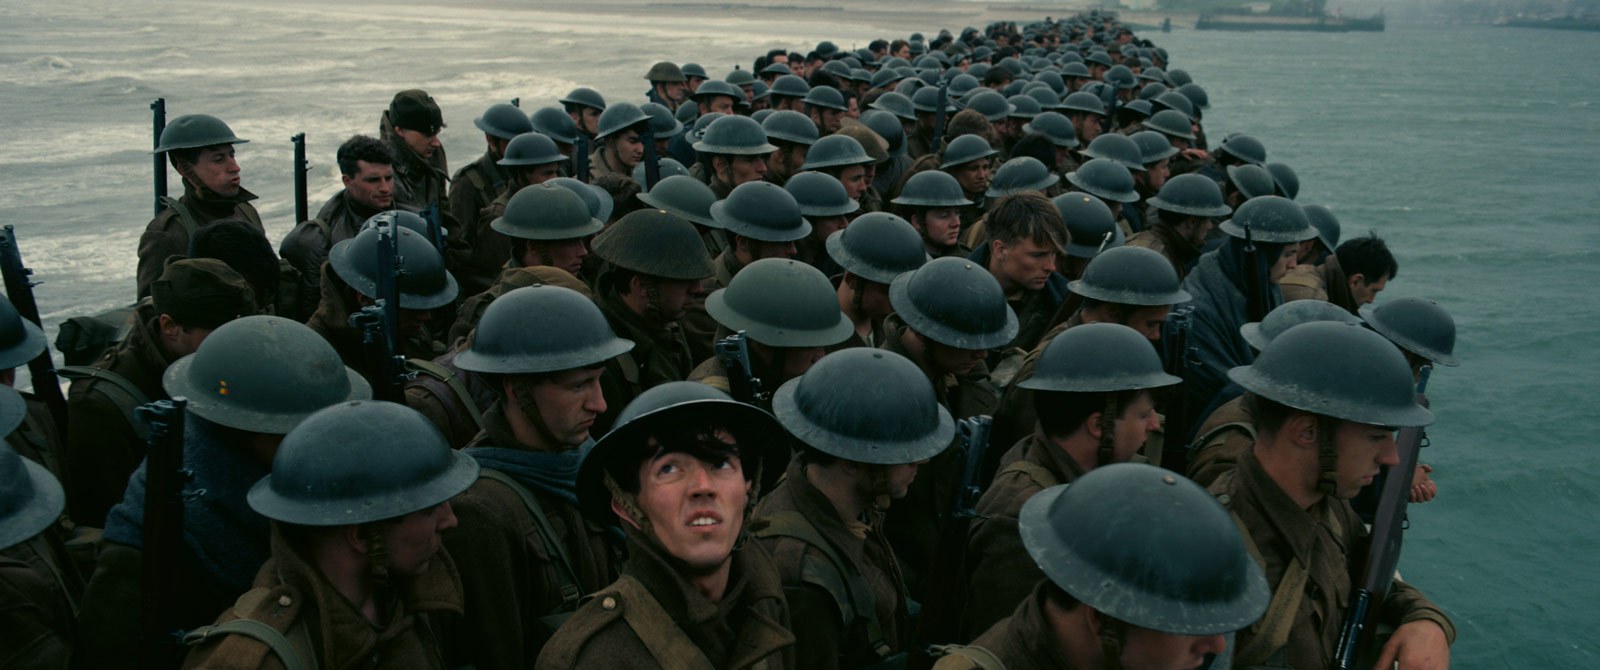 „Dunkierka” – film, który wcisnął mnie w fotel - Co na to Natorscy